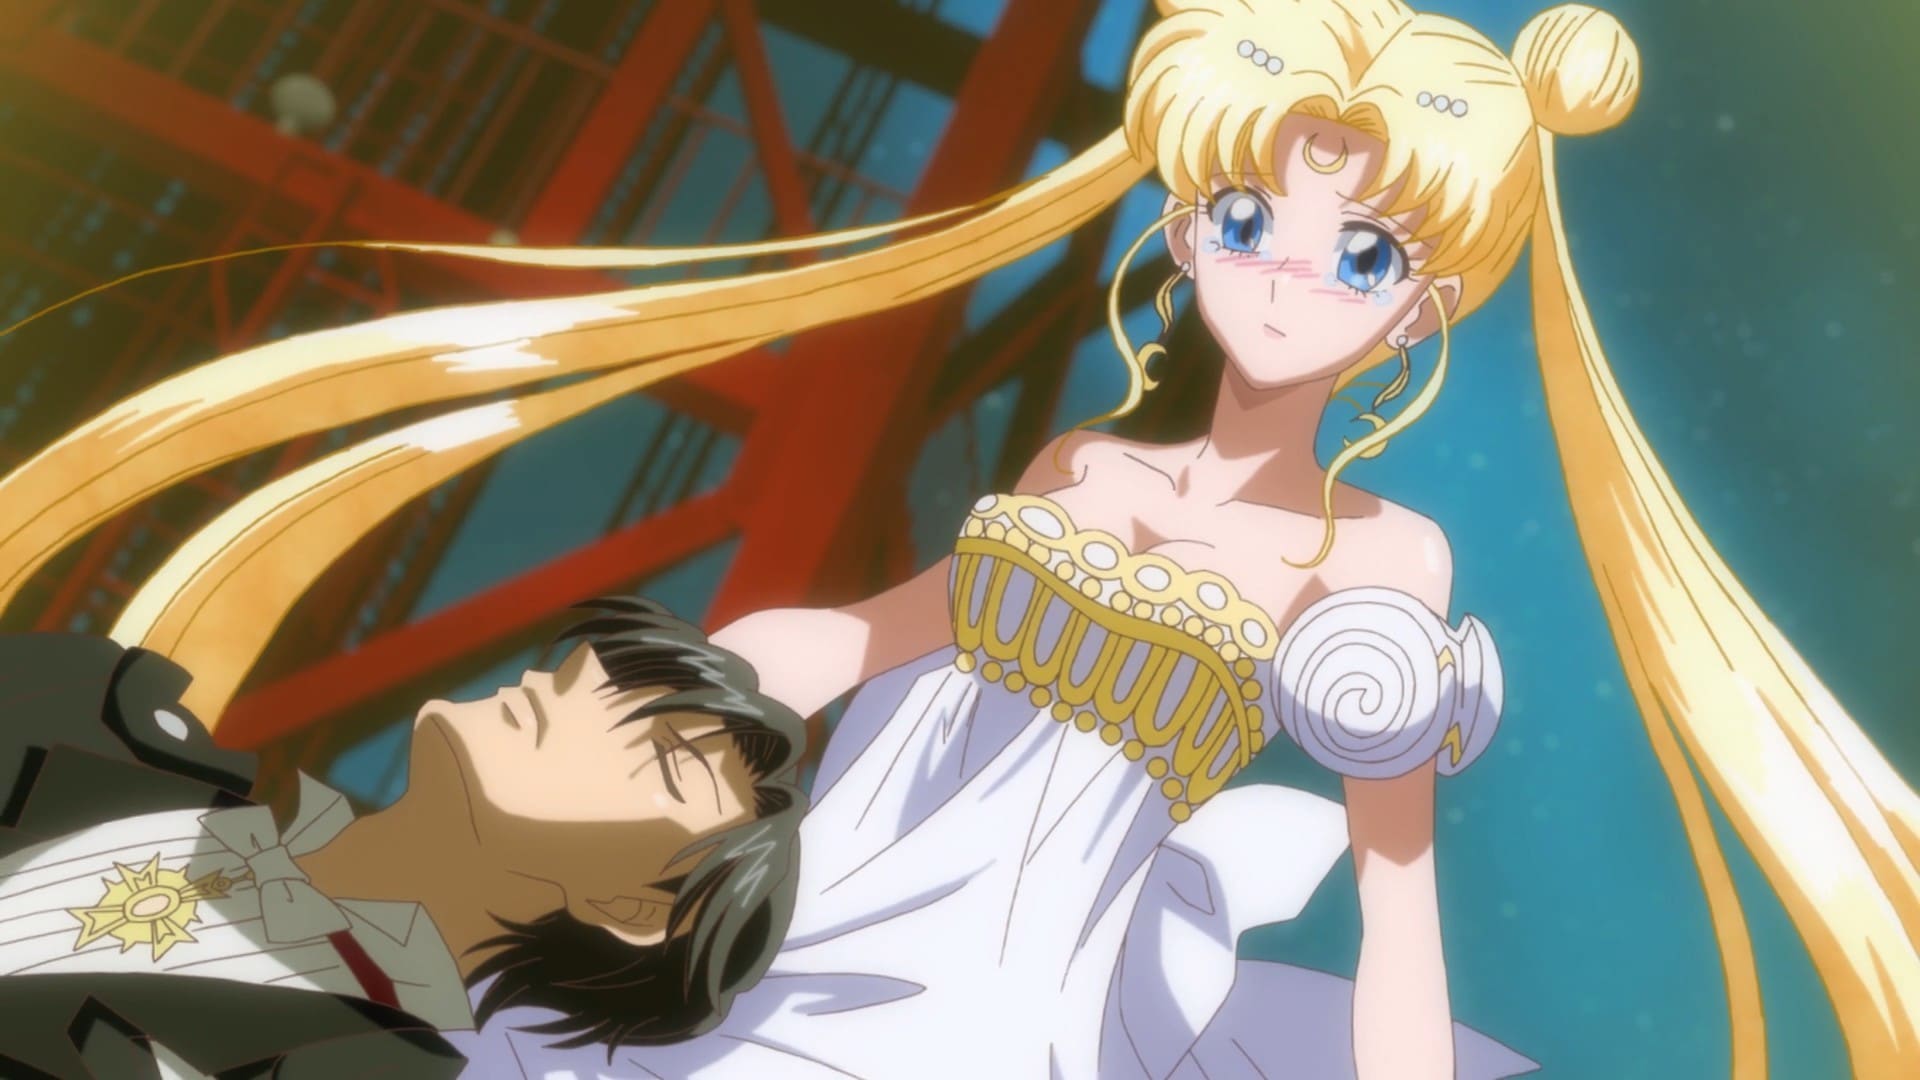 Sailor Moon Crystal – Ato 09